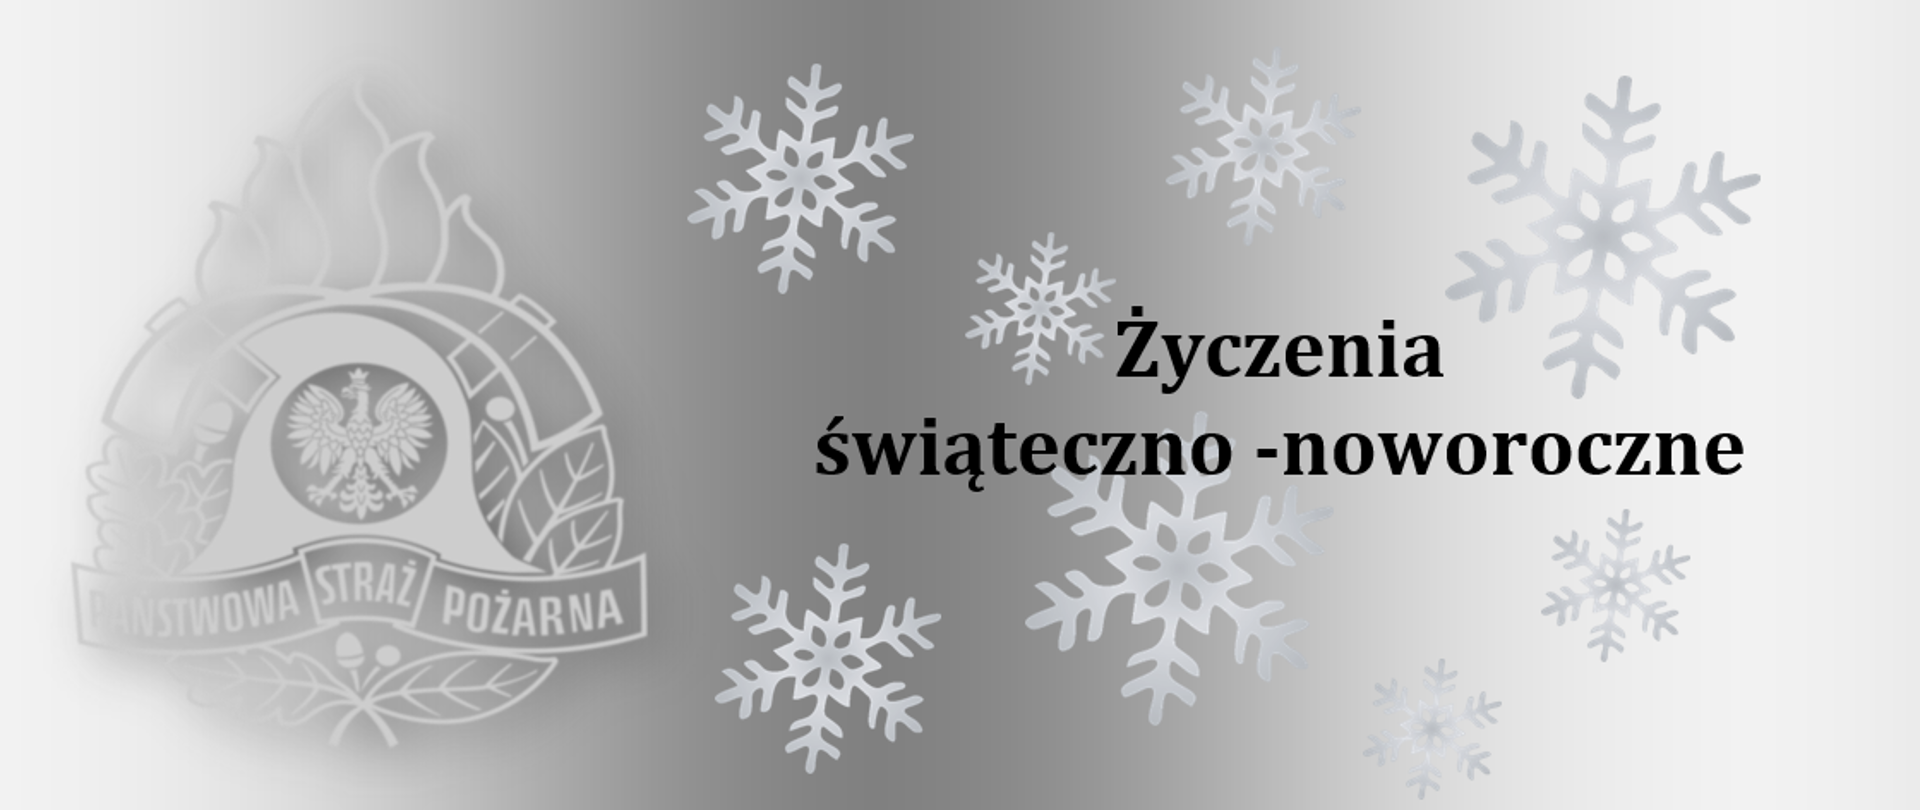 Czarny napis: Życzenia świateczno- noworoczne na tle szarego gradientu. W miejscu napisu różnej wielkości płatki śniegu. Po lewej stronie napisu logo PSP.